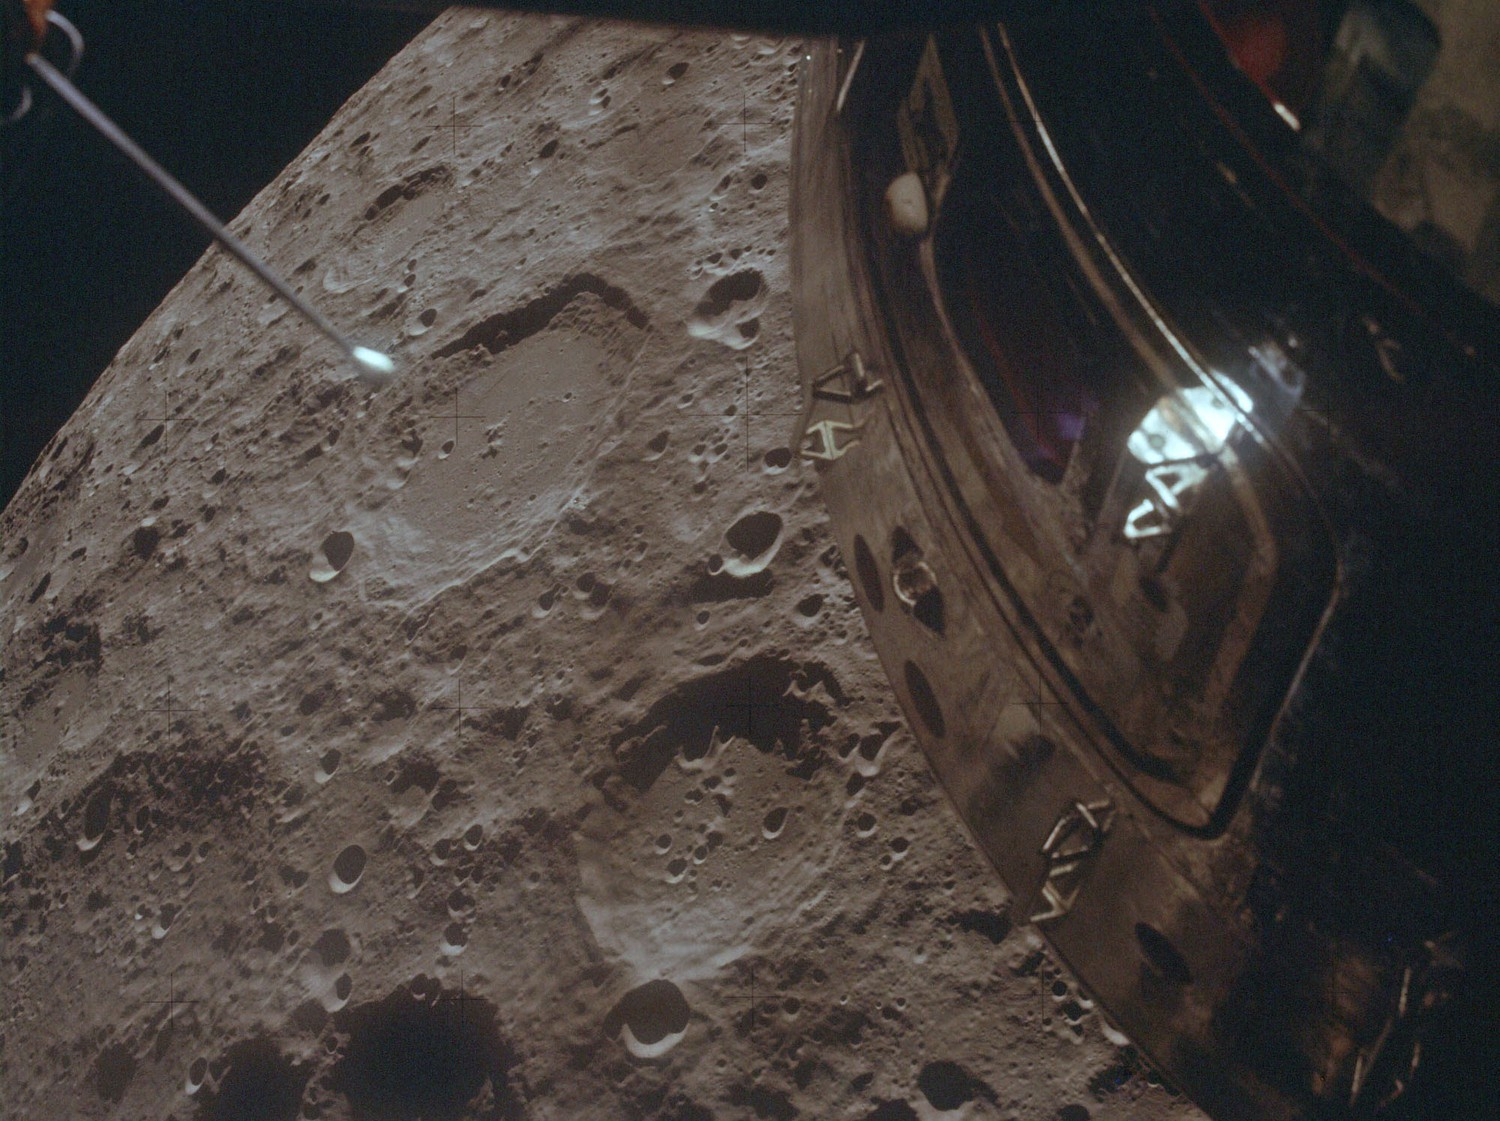 Sau khi gặp sự cố, tàu Apollo 13 phải tìm cách sử dụng lực hấp dẫn của Mặt trăng làm đà để lao về phía Trái đất. Trong ảnh là tầm quan sát của các phi hành gia khi chỉ cách bề mặt Mặt trăng khoảng 158 dặm ở phía bên kia. Vị trị này cũng là khoảng cách xa nhất mà một tàu vũ trụ có người lái tạo ra với Trái đất: 400,171 km.